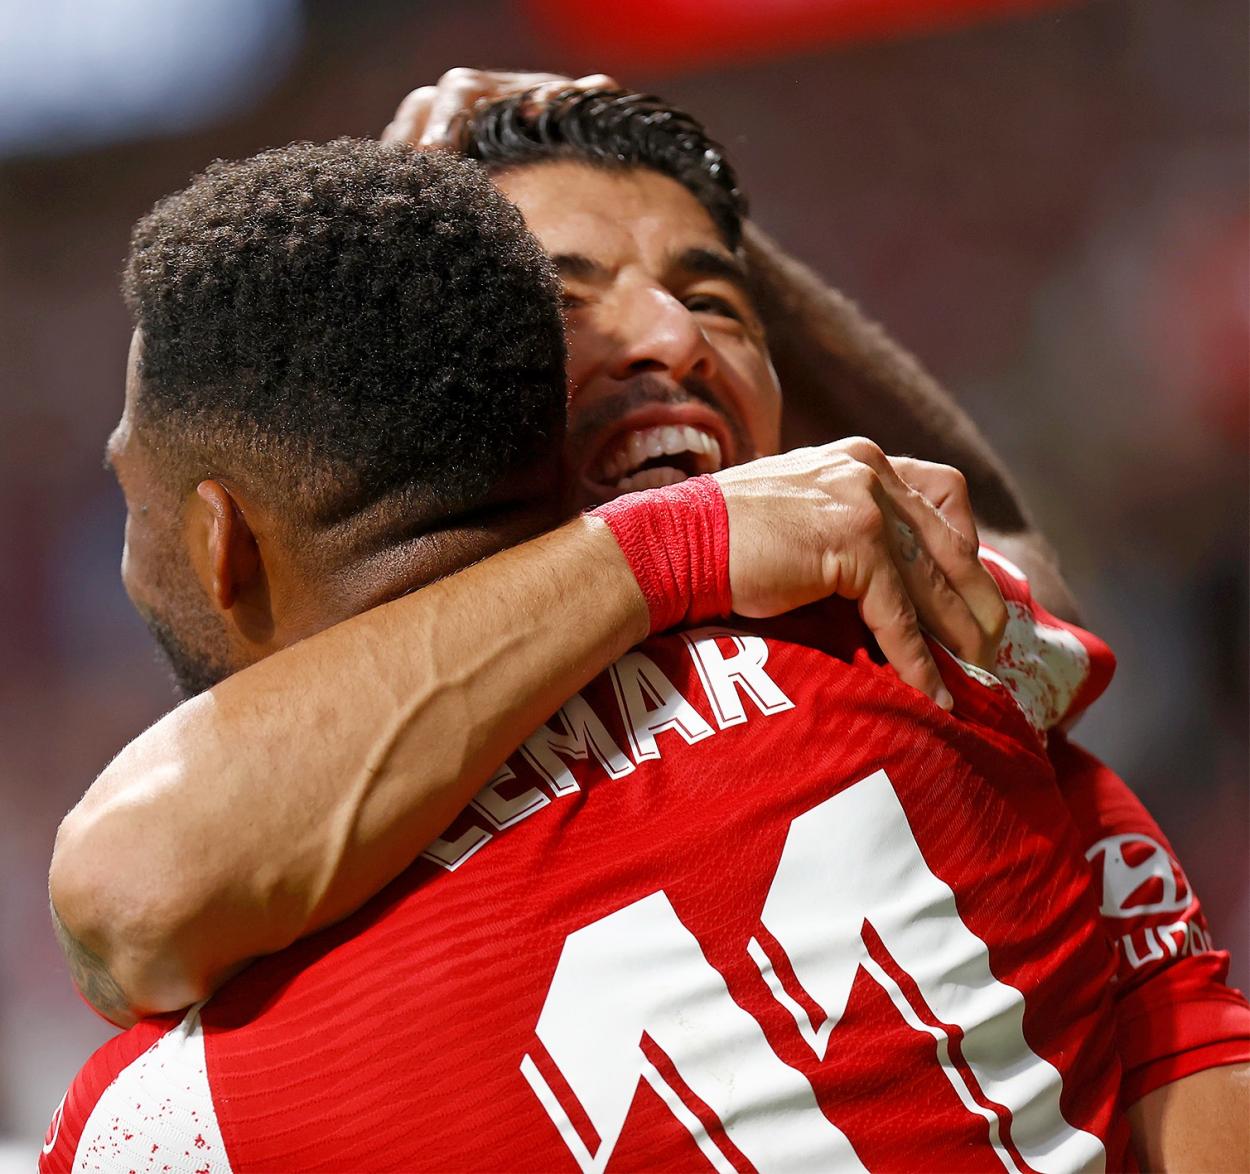 Los goleadores de la noche, Thomas Lemar y Luis Suárez. / Twitter: Atlético de Madrid oficial